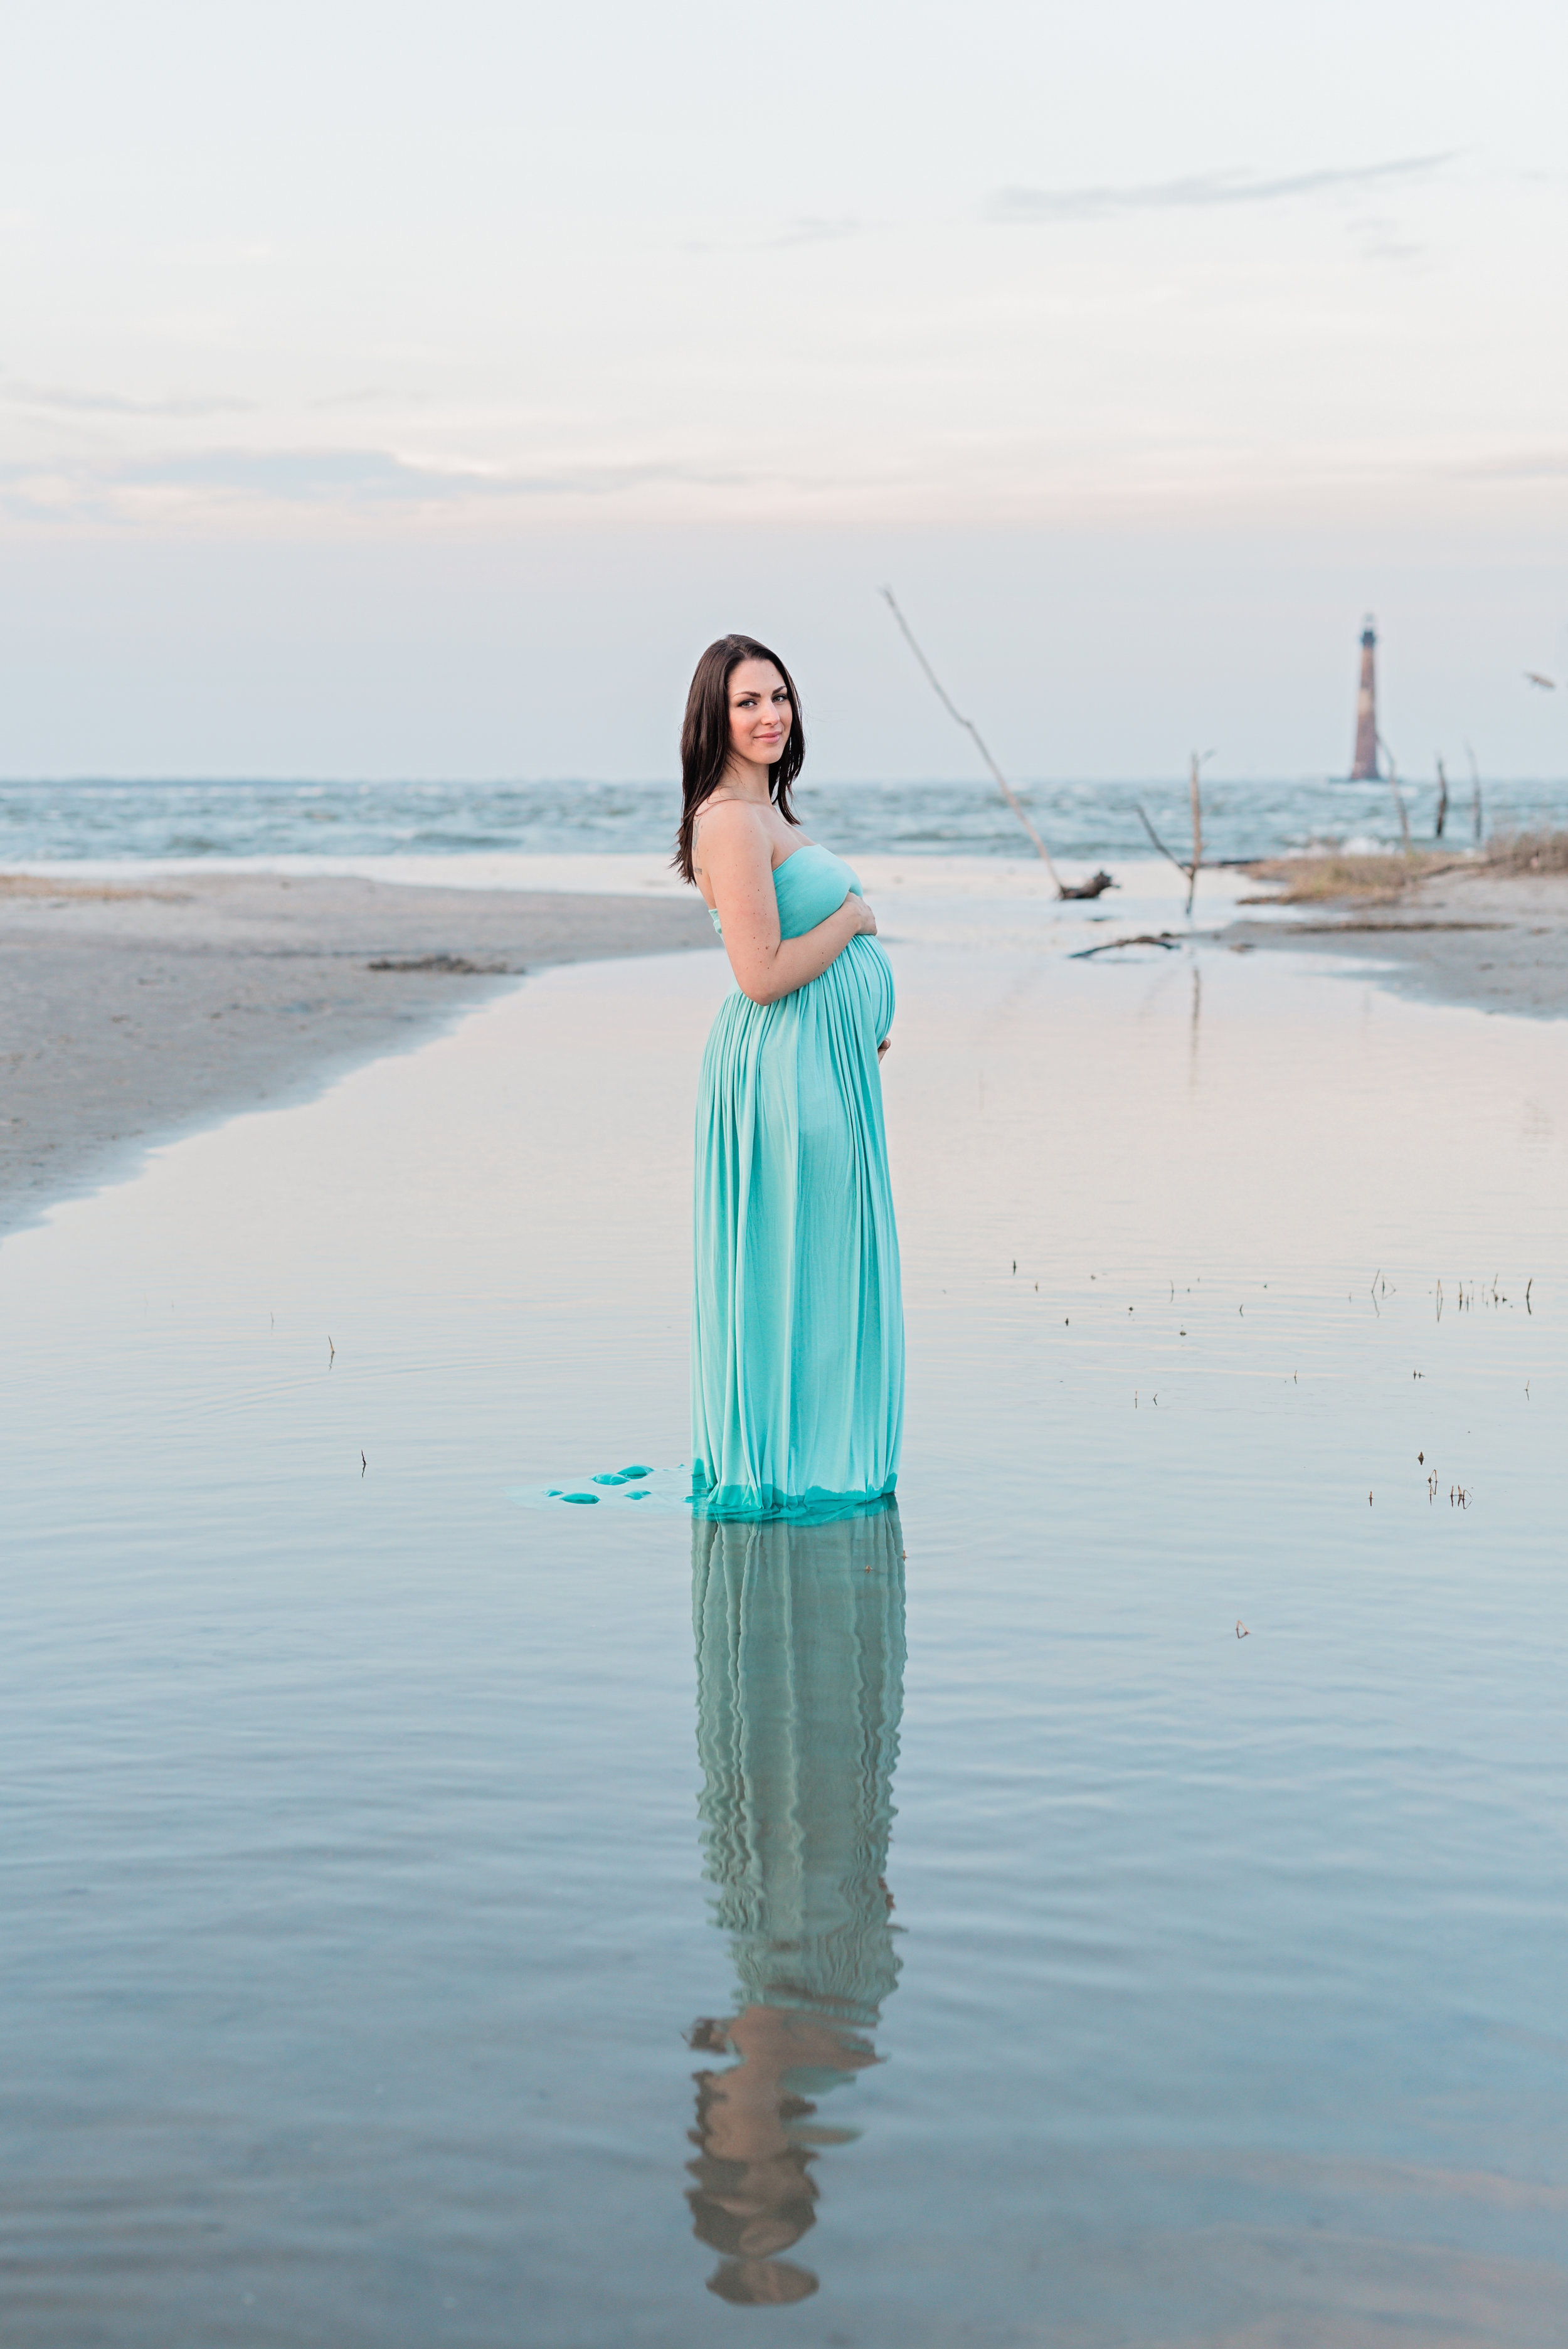 Folly-Beach-Maternity-Photographer-Following-Seas-Photography-2064 copy.jpg